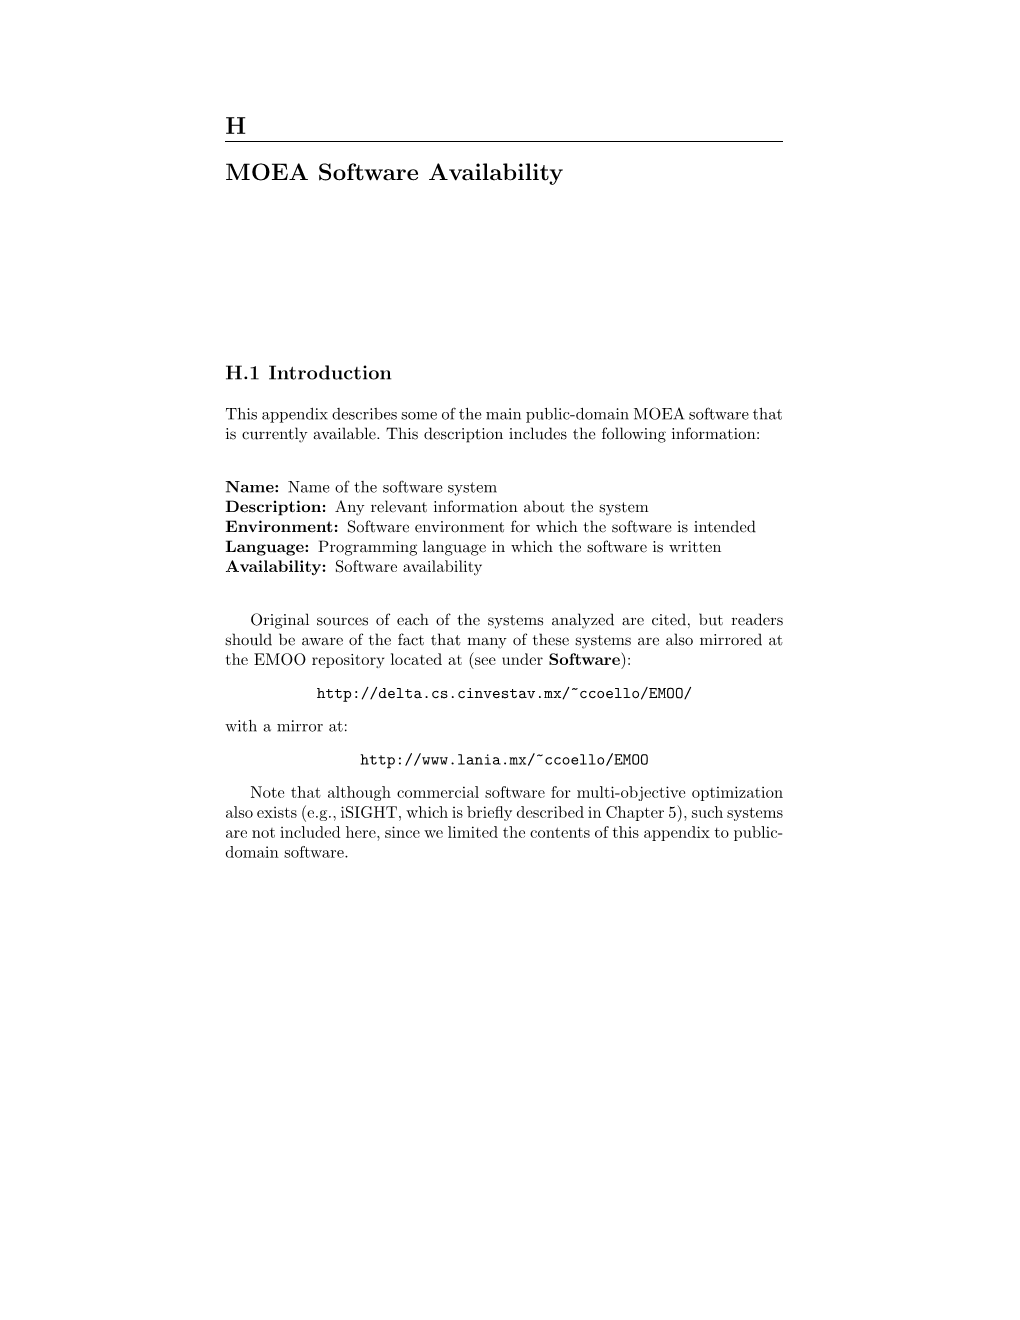 Appendix H: MOEA Software Availability